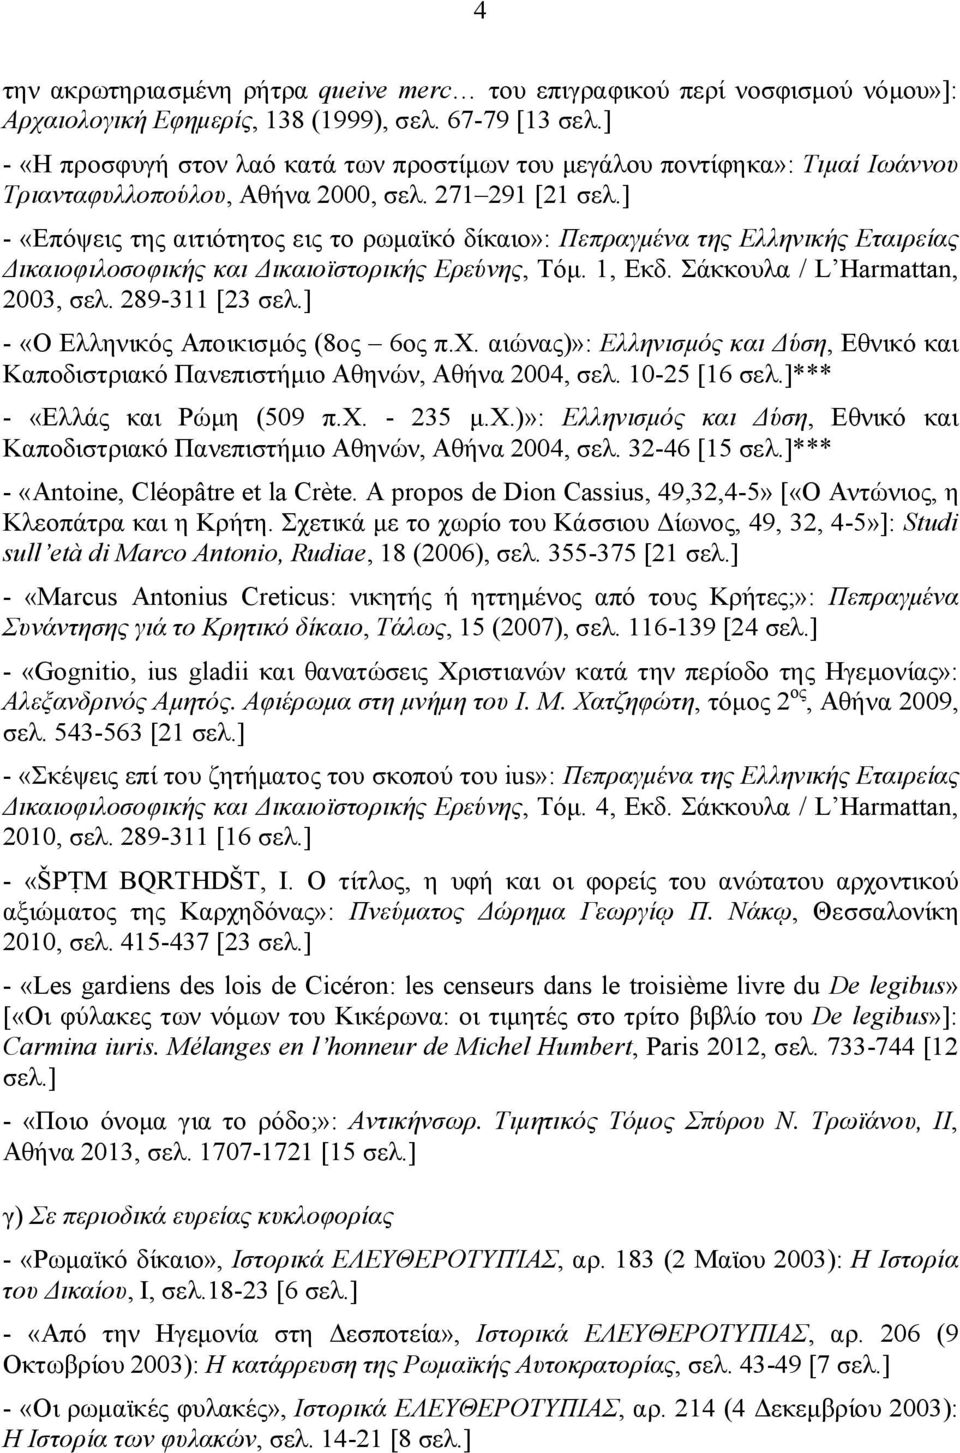 ] - «Επόψεις της αιτιότητος εις το ρωμαϊκό δίκαιο»: Πεπραγμένα της Ελληνικής Εταιρείας Δικαιοφιλοσοφικής και Δικαιοϊστορικής Ερεύνης, Τόμ. 1, Εκδ. Σάκκουλα / L Harmattan, 2003, σελ. 289-311 [23 σελ.